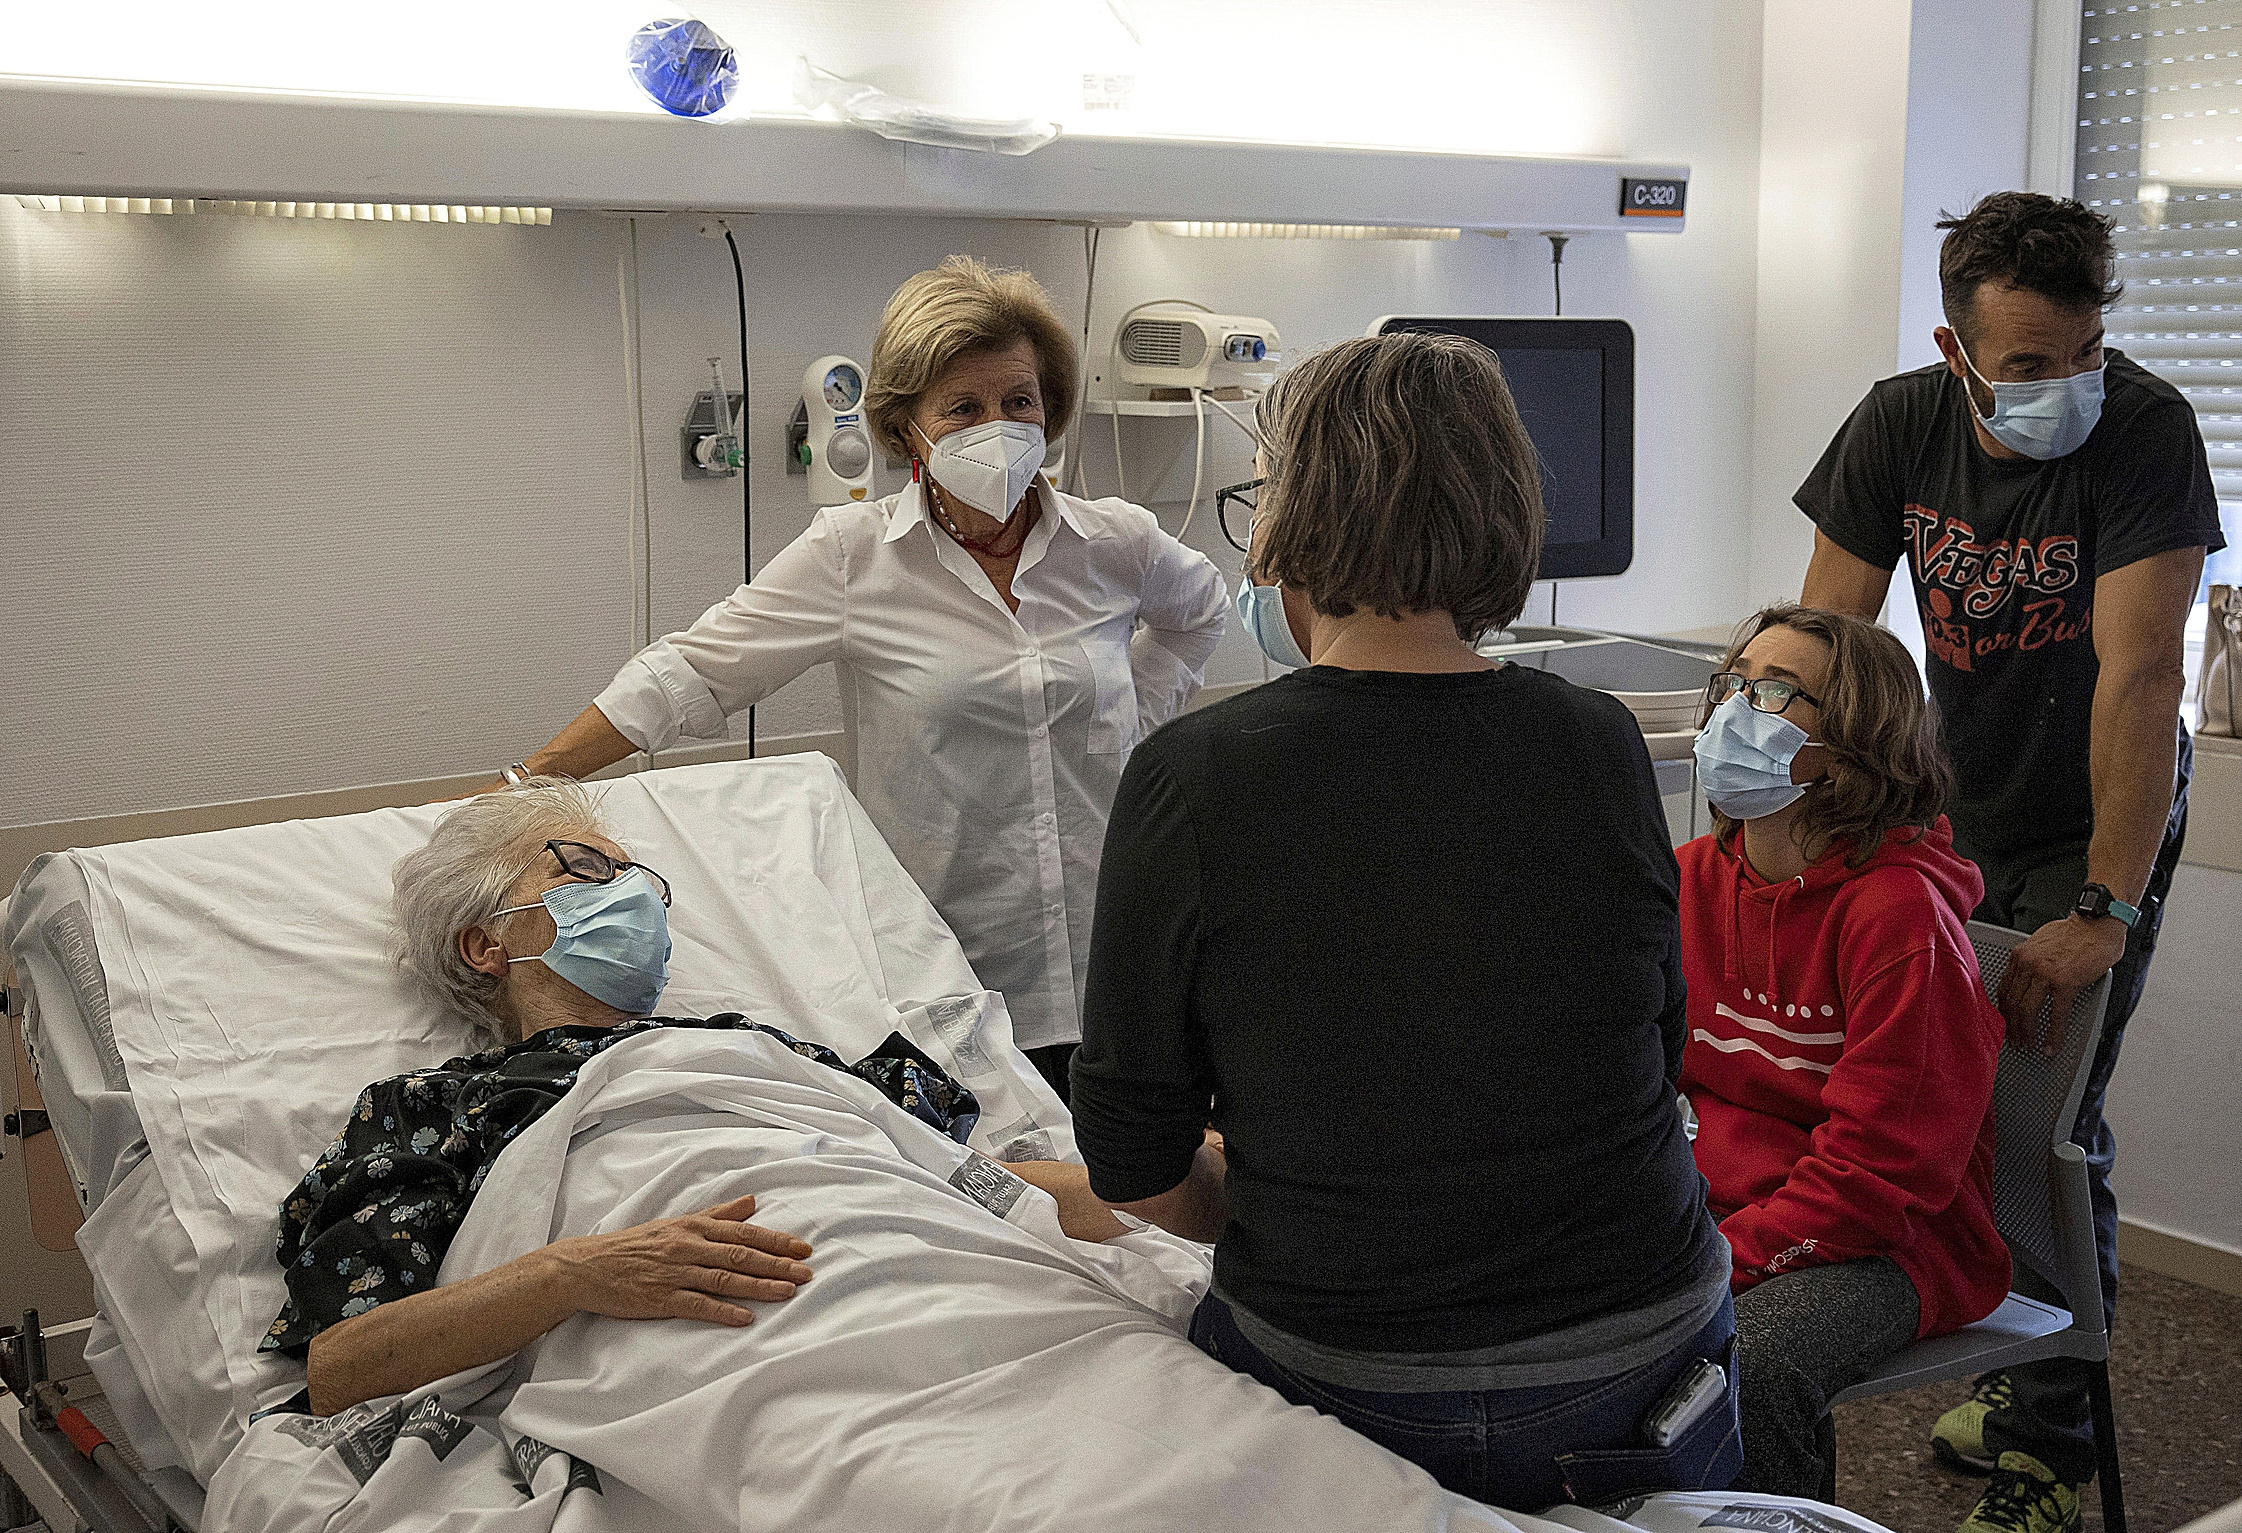 Mara, rodeada de su familia en el Hospital Clnico de Valencia el 17/12/2021, antes de donar sus rganos y culminar el proceso de su eutanasia.